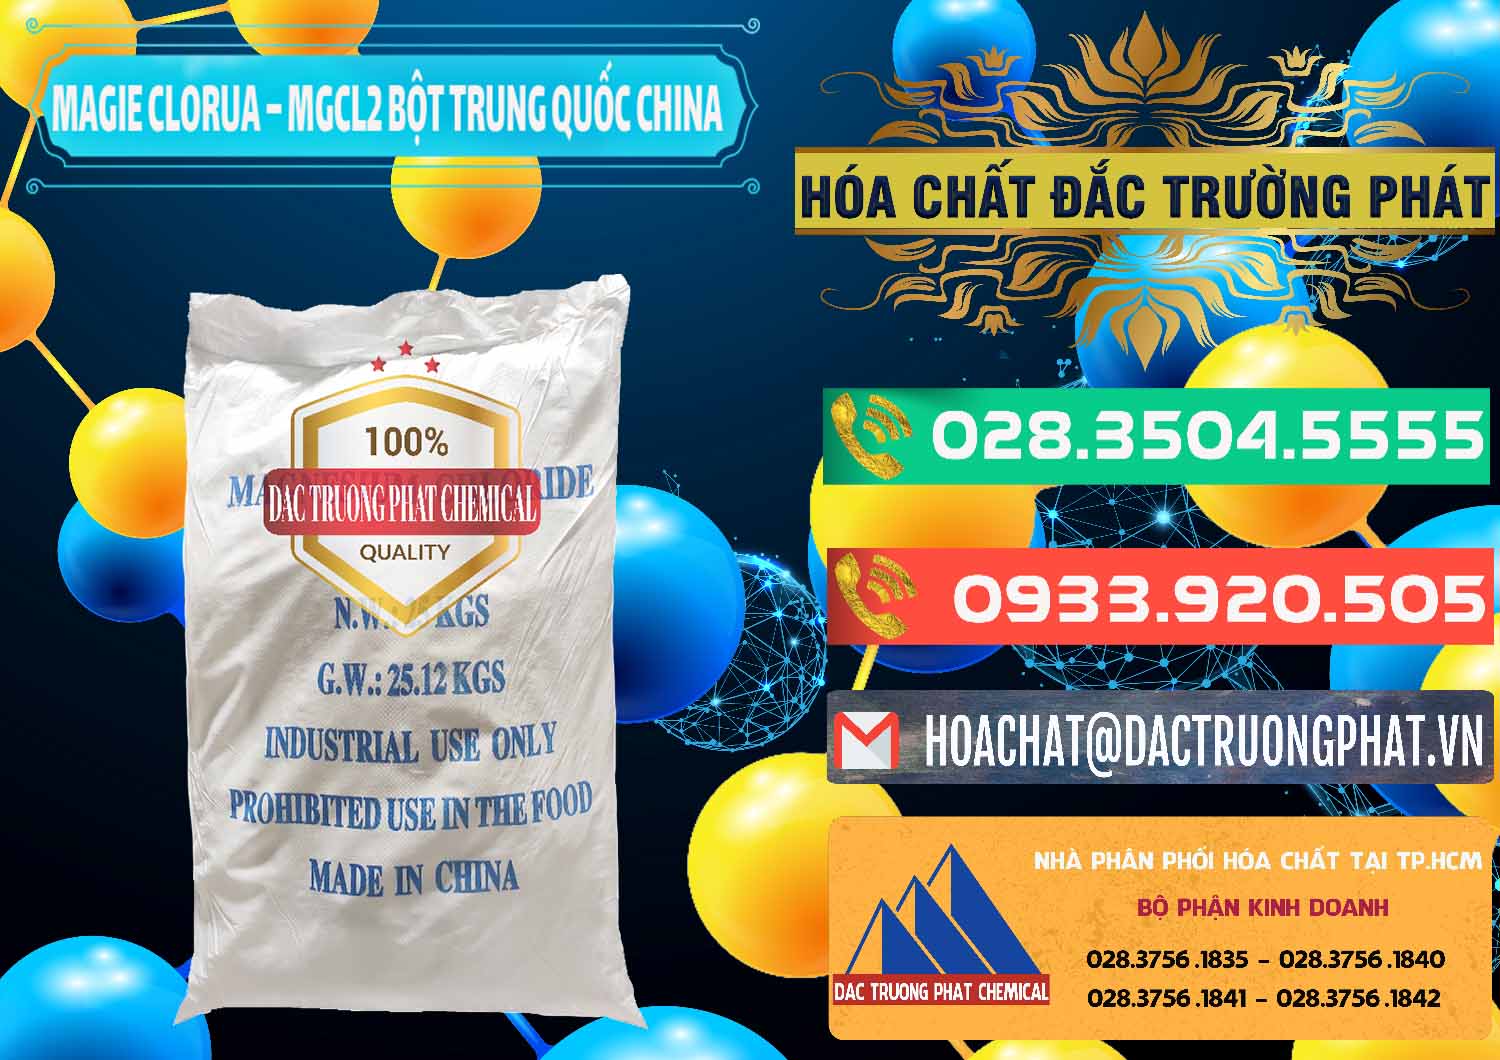 Công ty bán ( cung cấp ) Magie Clorua – MGCL2 96% Dạng Bột Bao Chữ Xanh Trung Quốc China - 0207 - Nhà nhập khẩu & phân phối hóa chất tại TP.HCM - congtyhoachat.com.vn